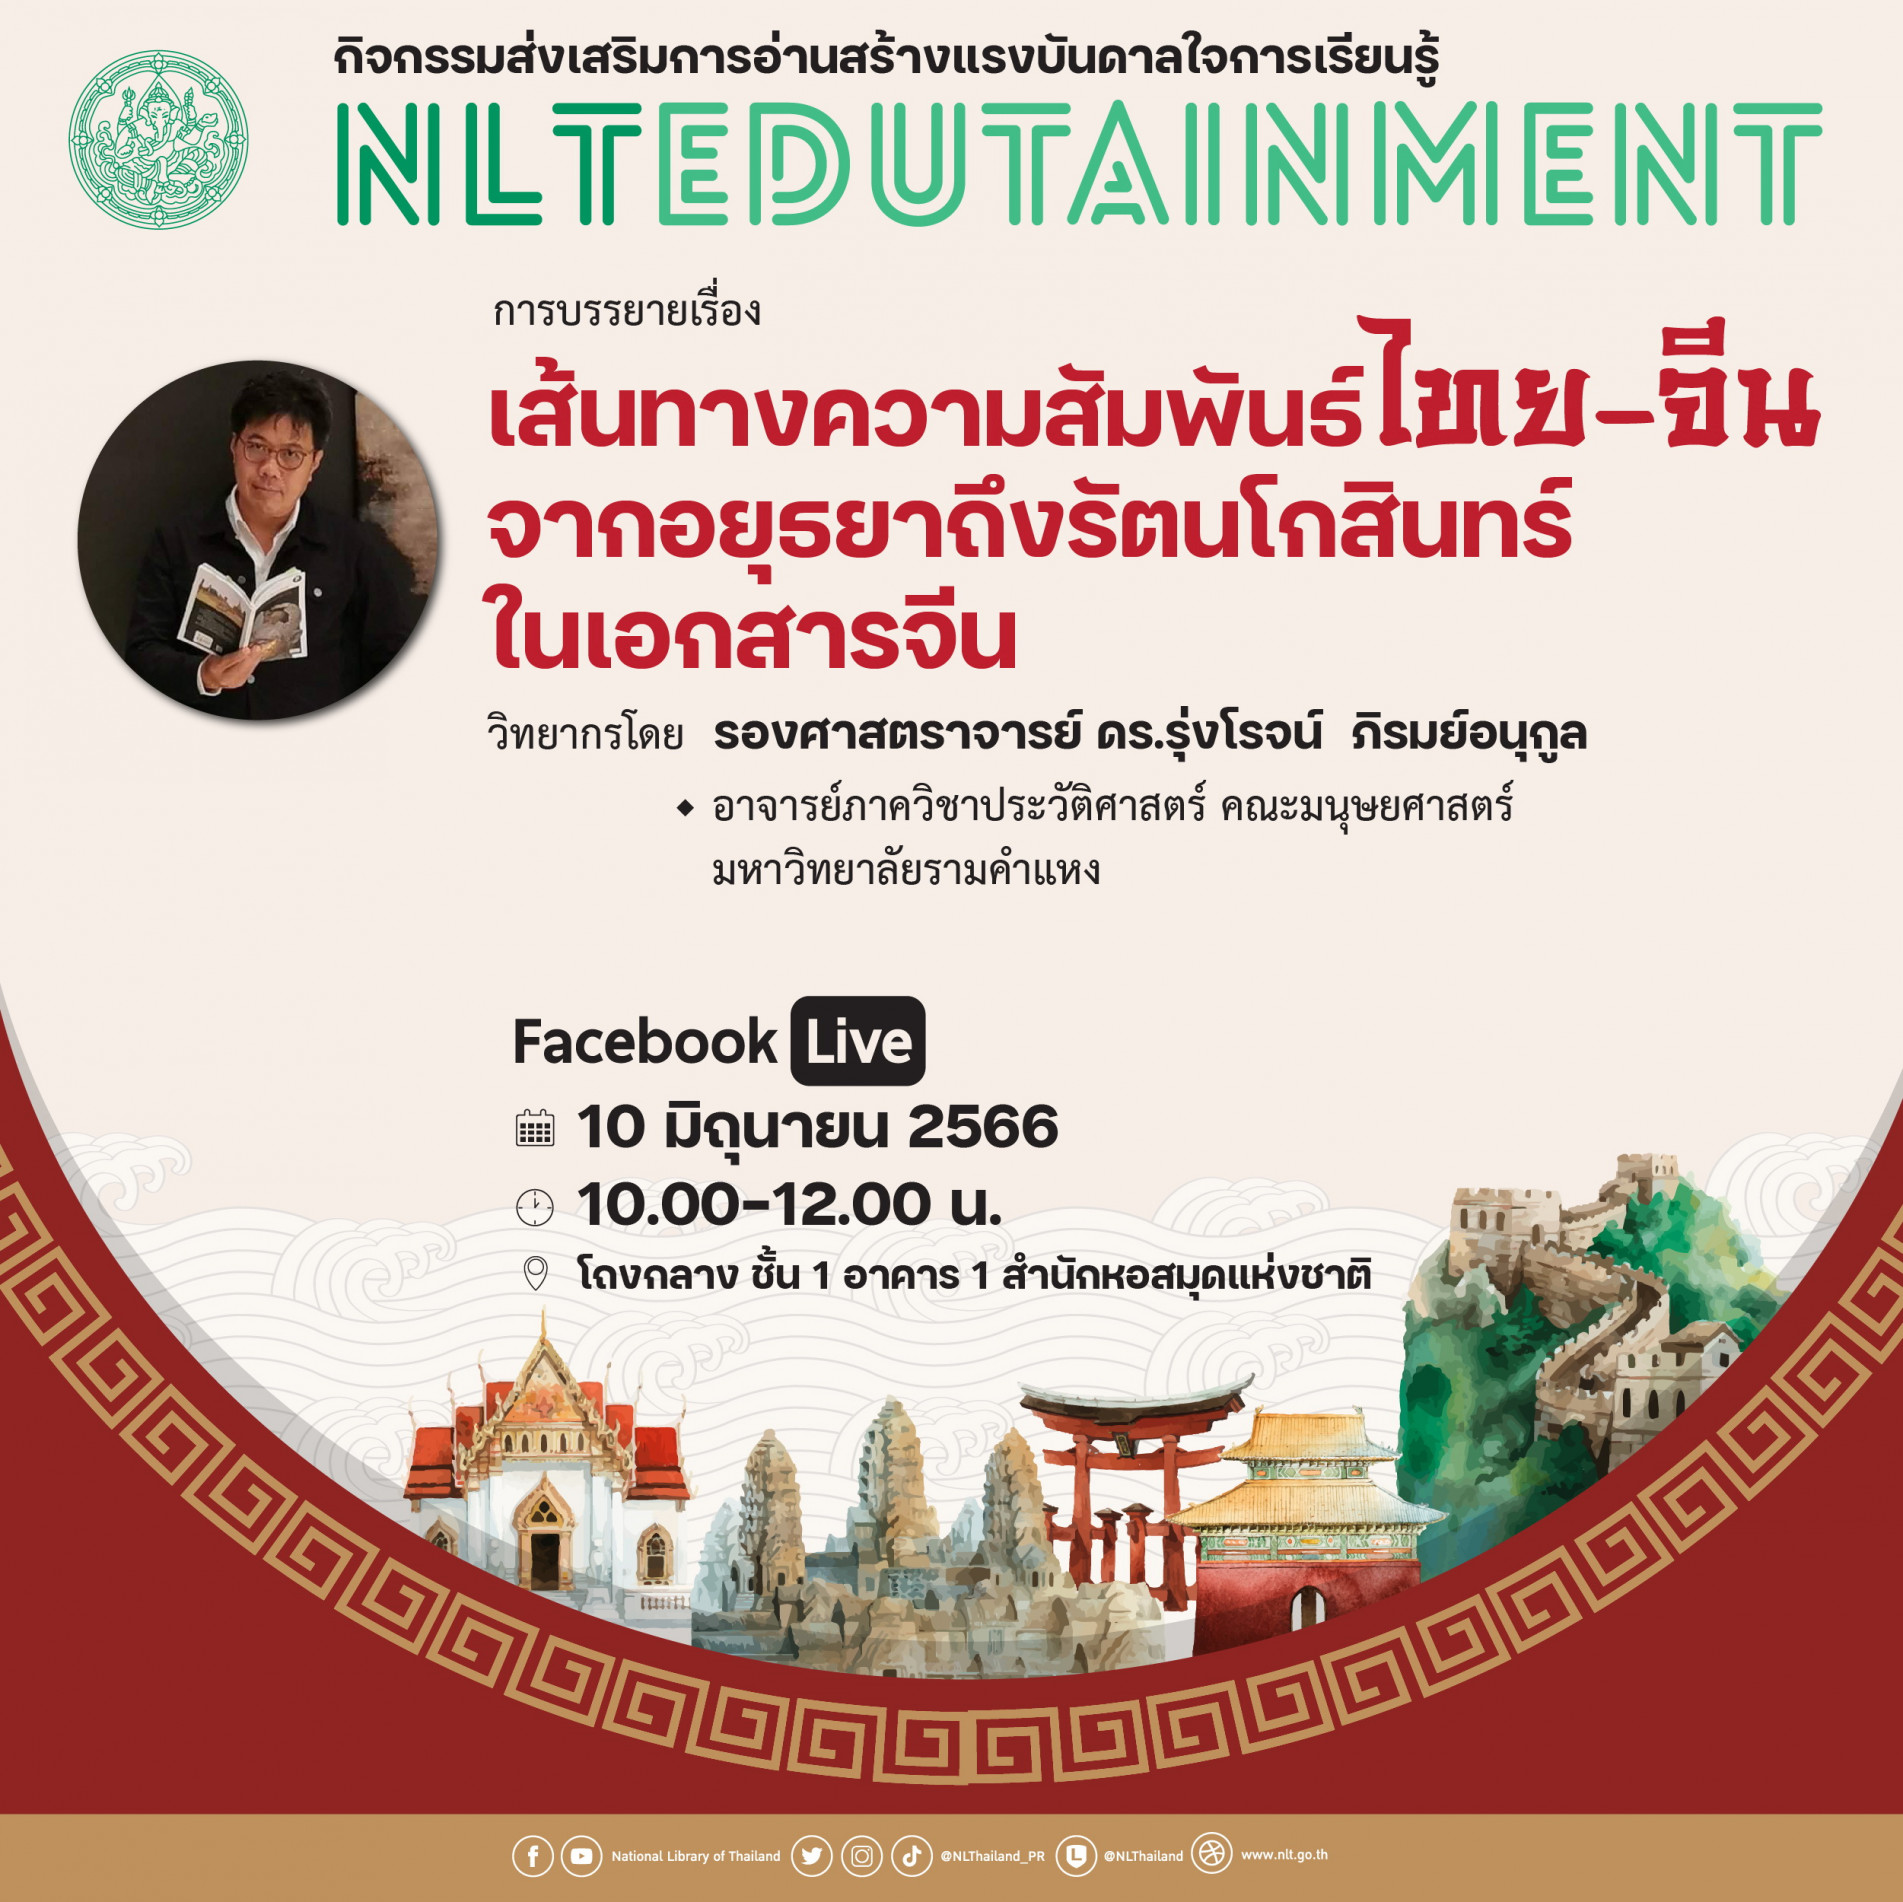 ขอเชิญรับชม Facebook Live การบรรยาย “เส้นทางความสัมพันธ์ไทย-จีน จากอยุธยาถึงรัตนโกสินทร์ในเอกสารจีน”